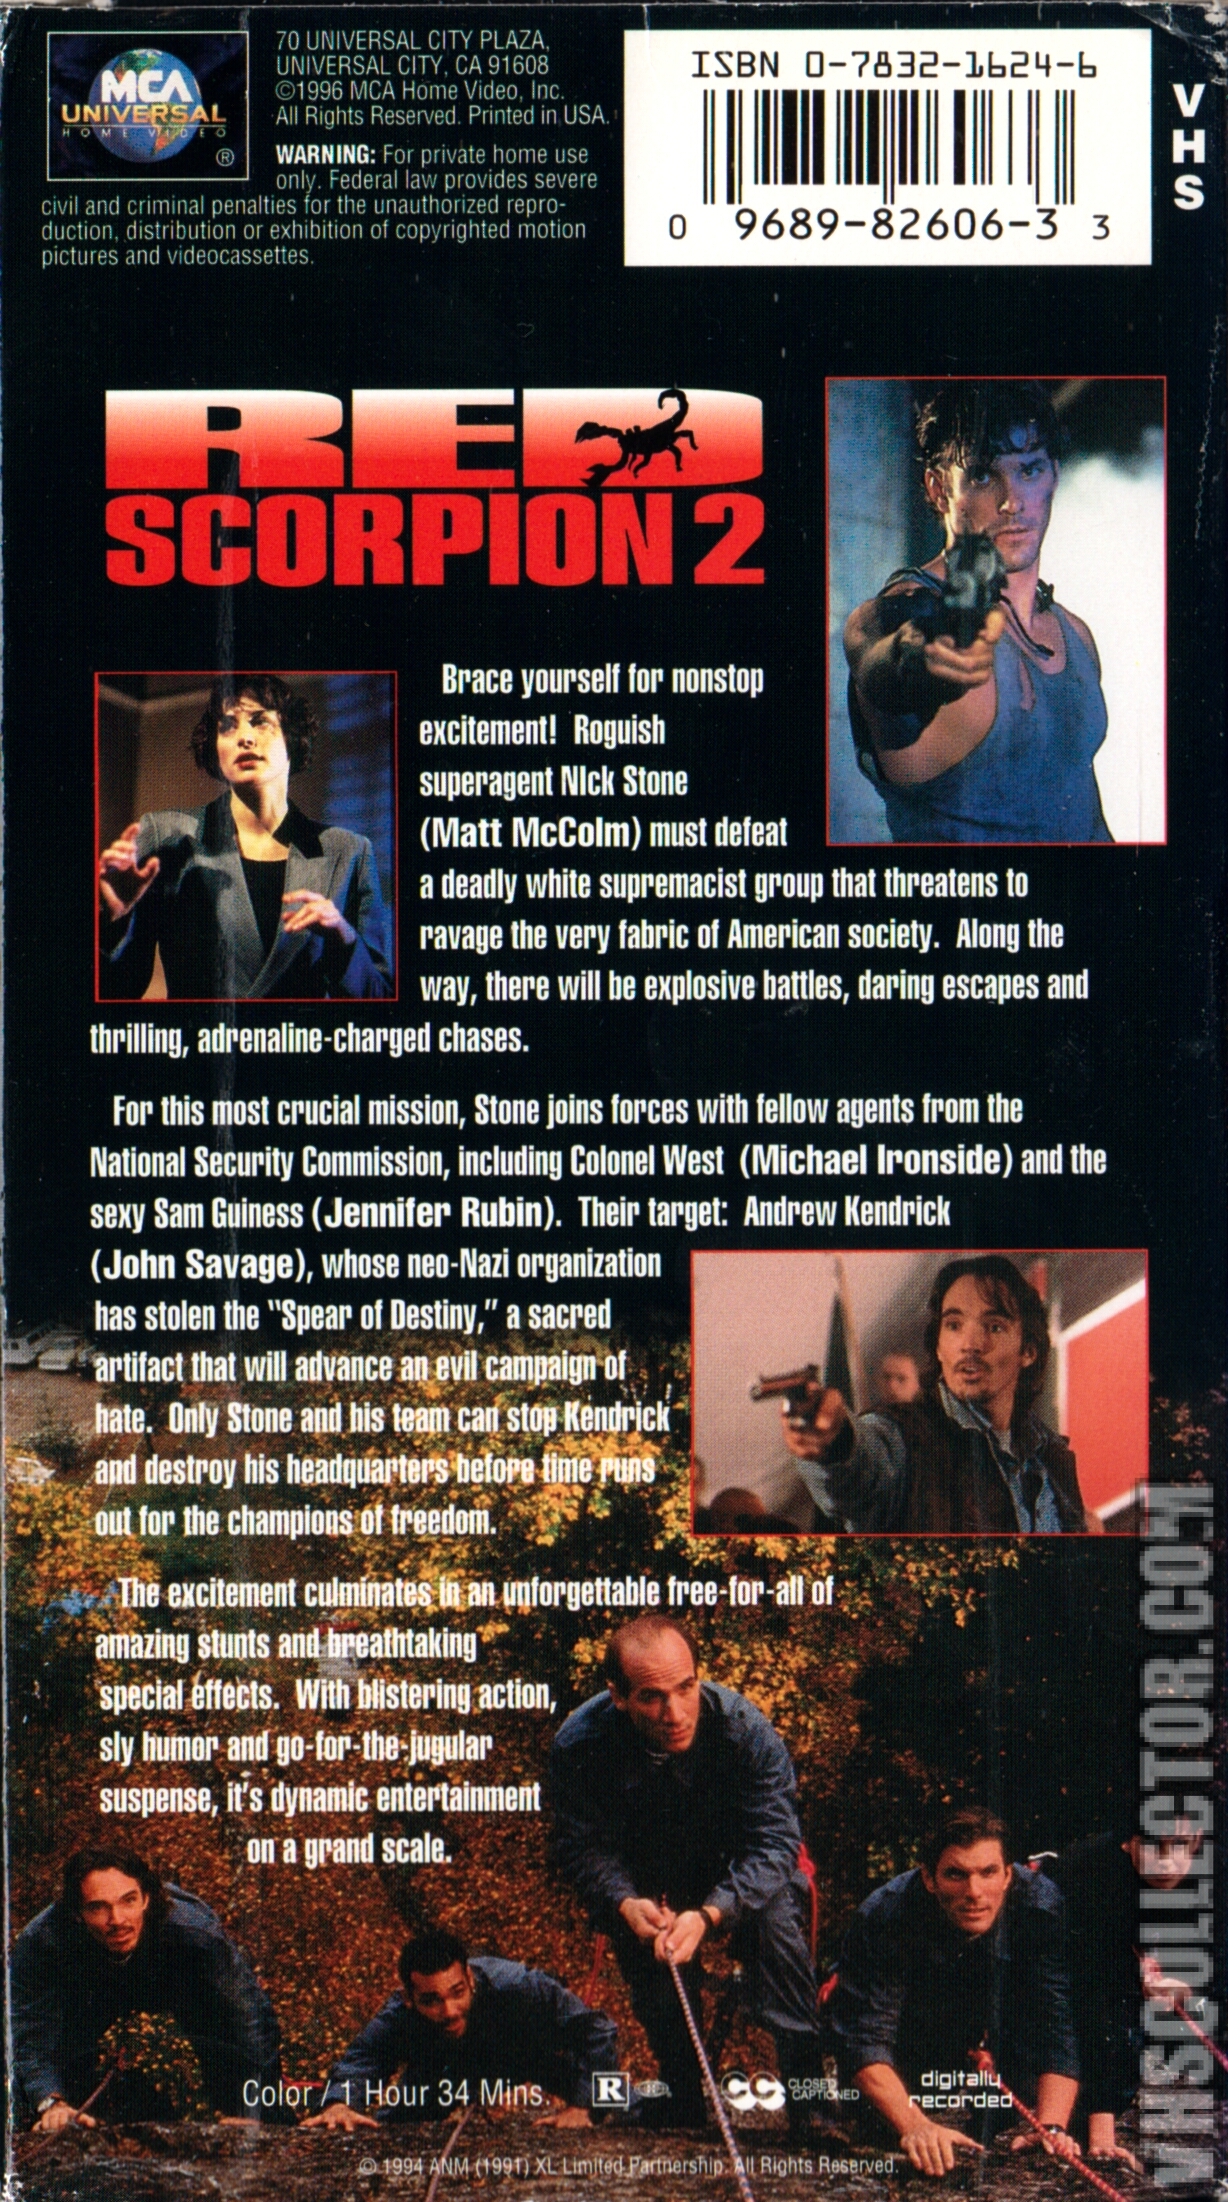 Red Scorpion 2